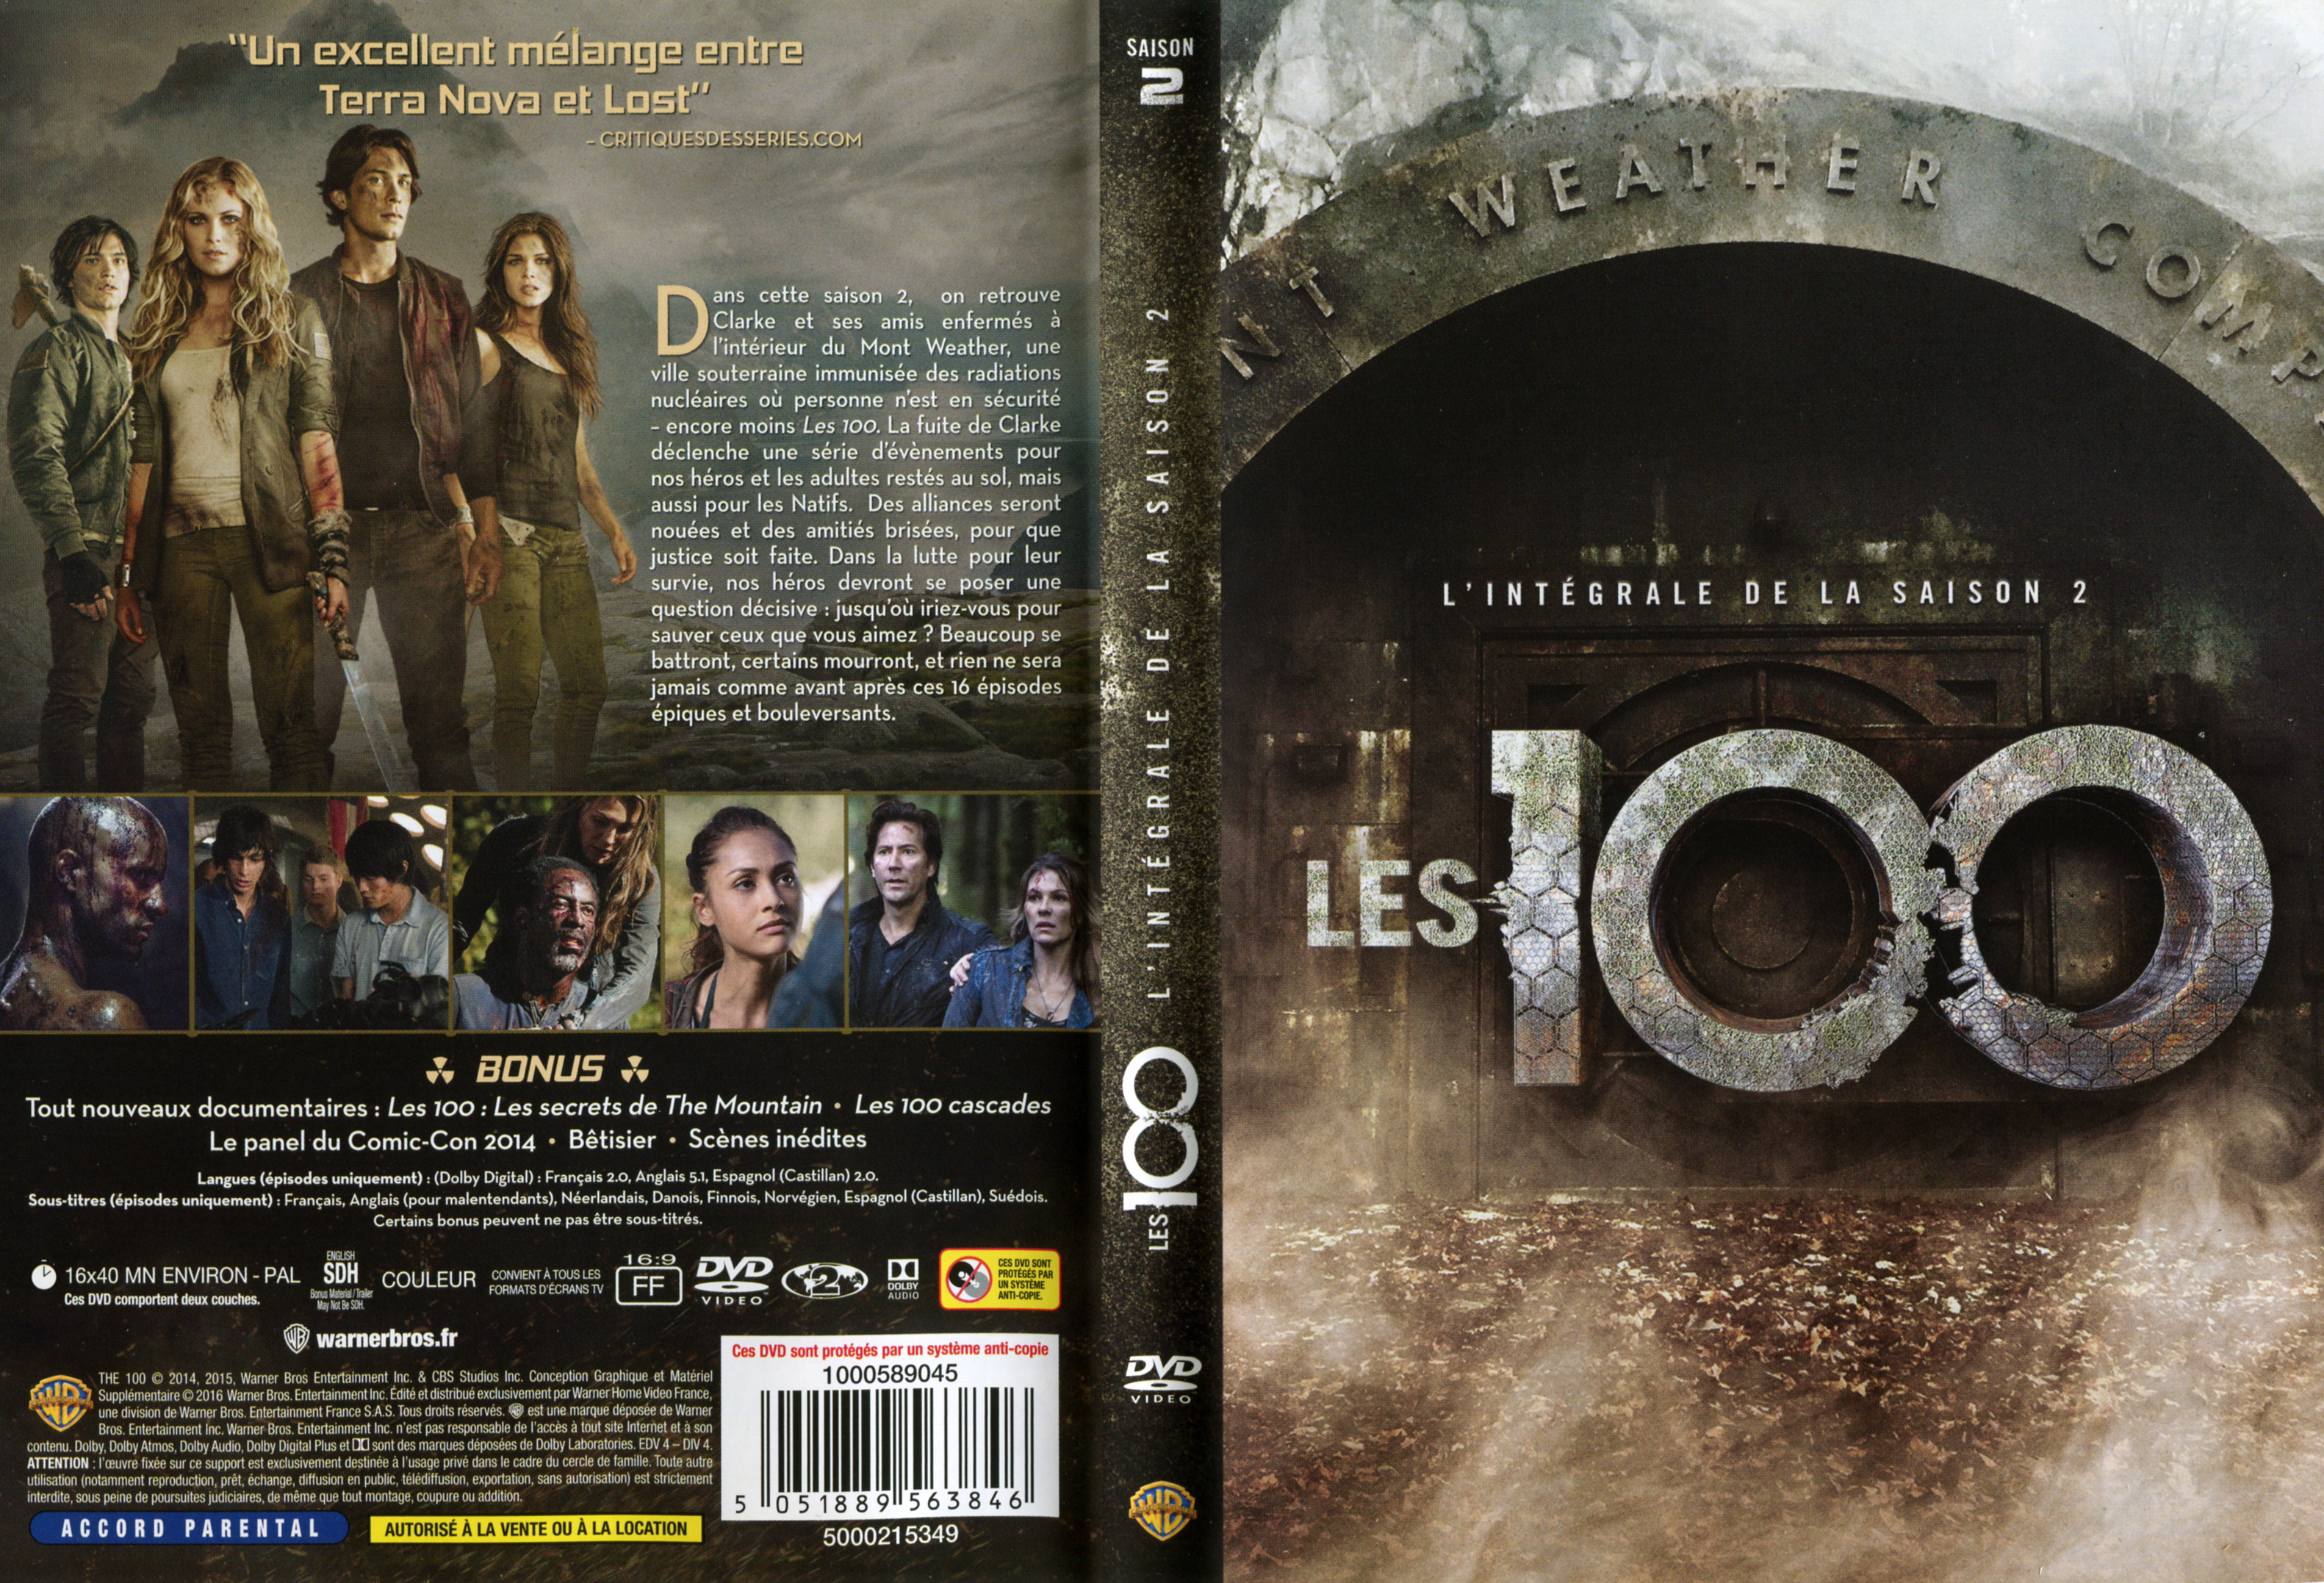 Jaquette DVD Les 100 Saison 2